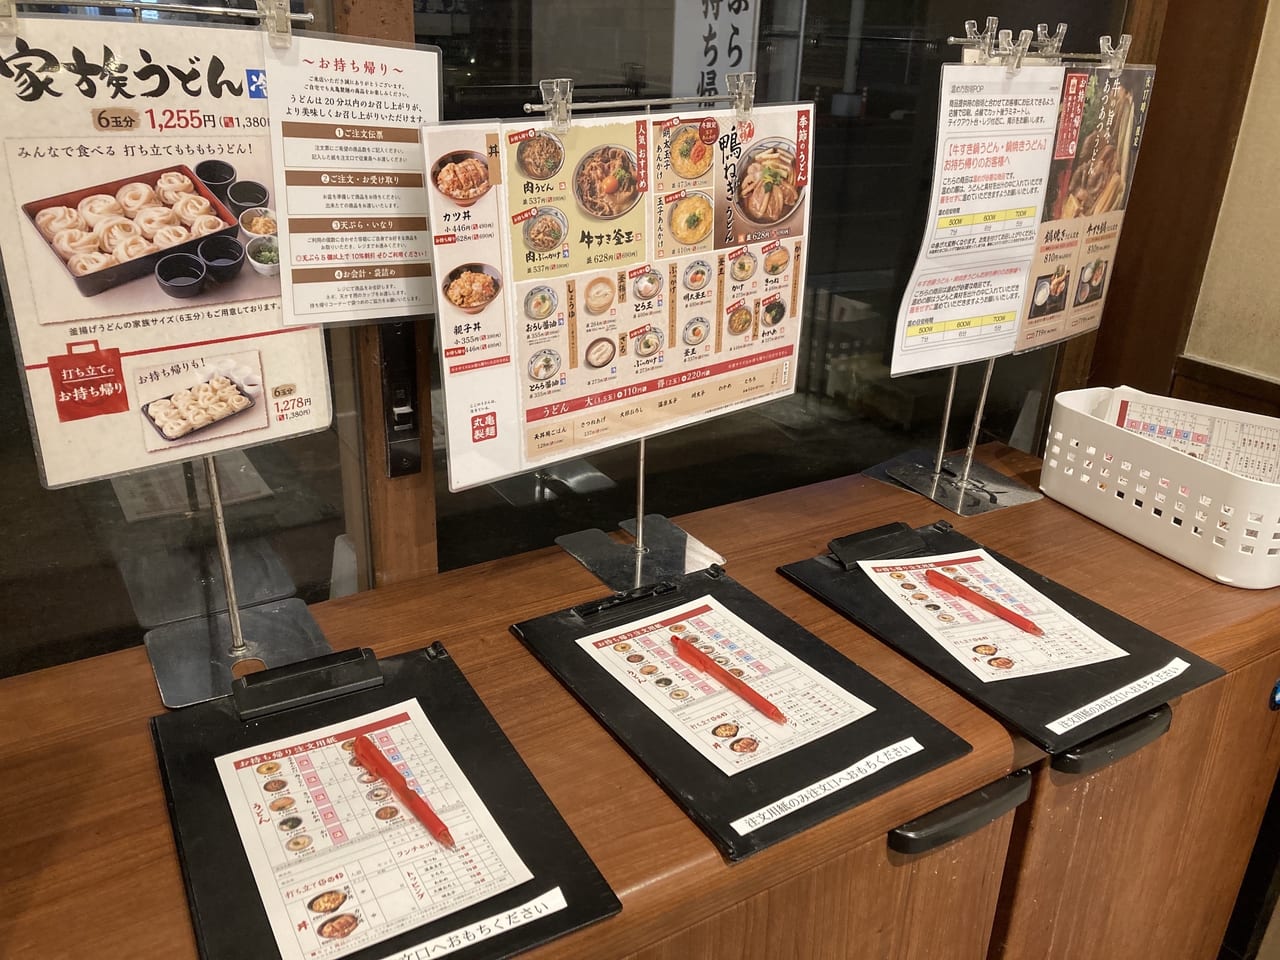 丸亀製麺のテイクアウト注文の用紙